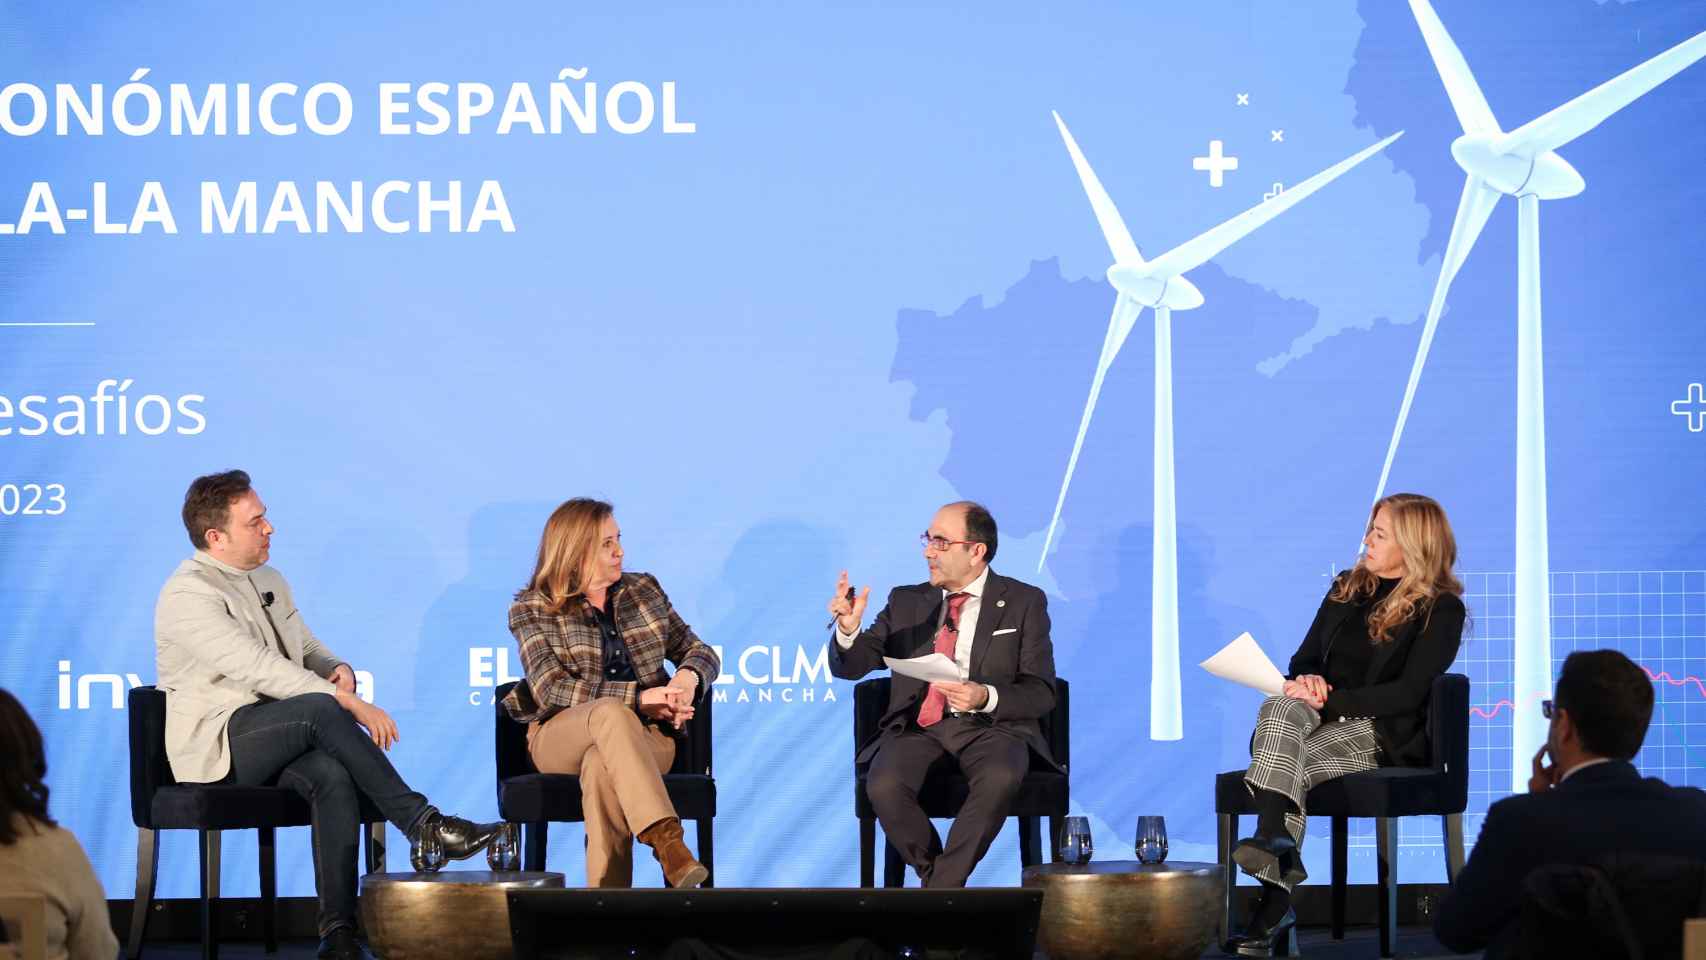 Imagen de la mesa redonda 'Educación como base para el empleo', en la segunda jornada del II Foro Económico de Castilla-La Mancha 'Logros y desafíos'.